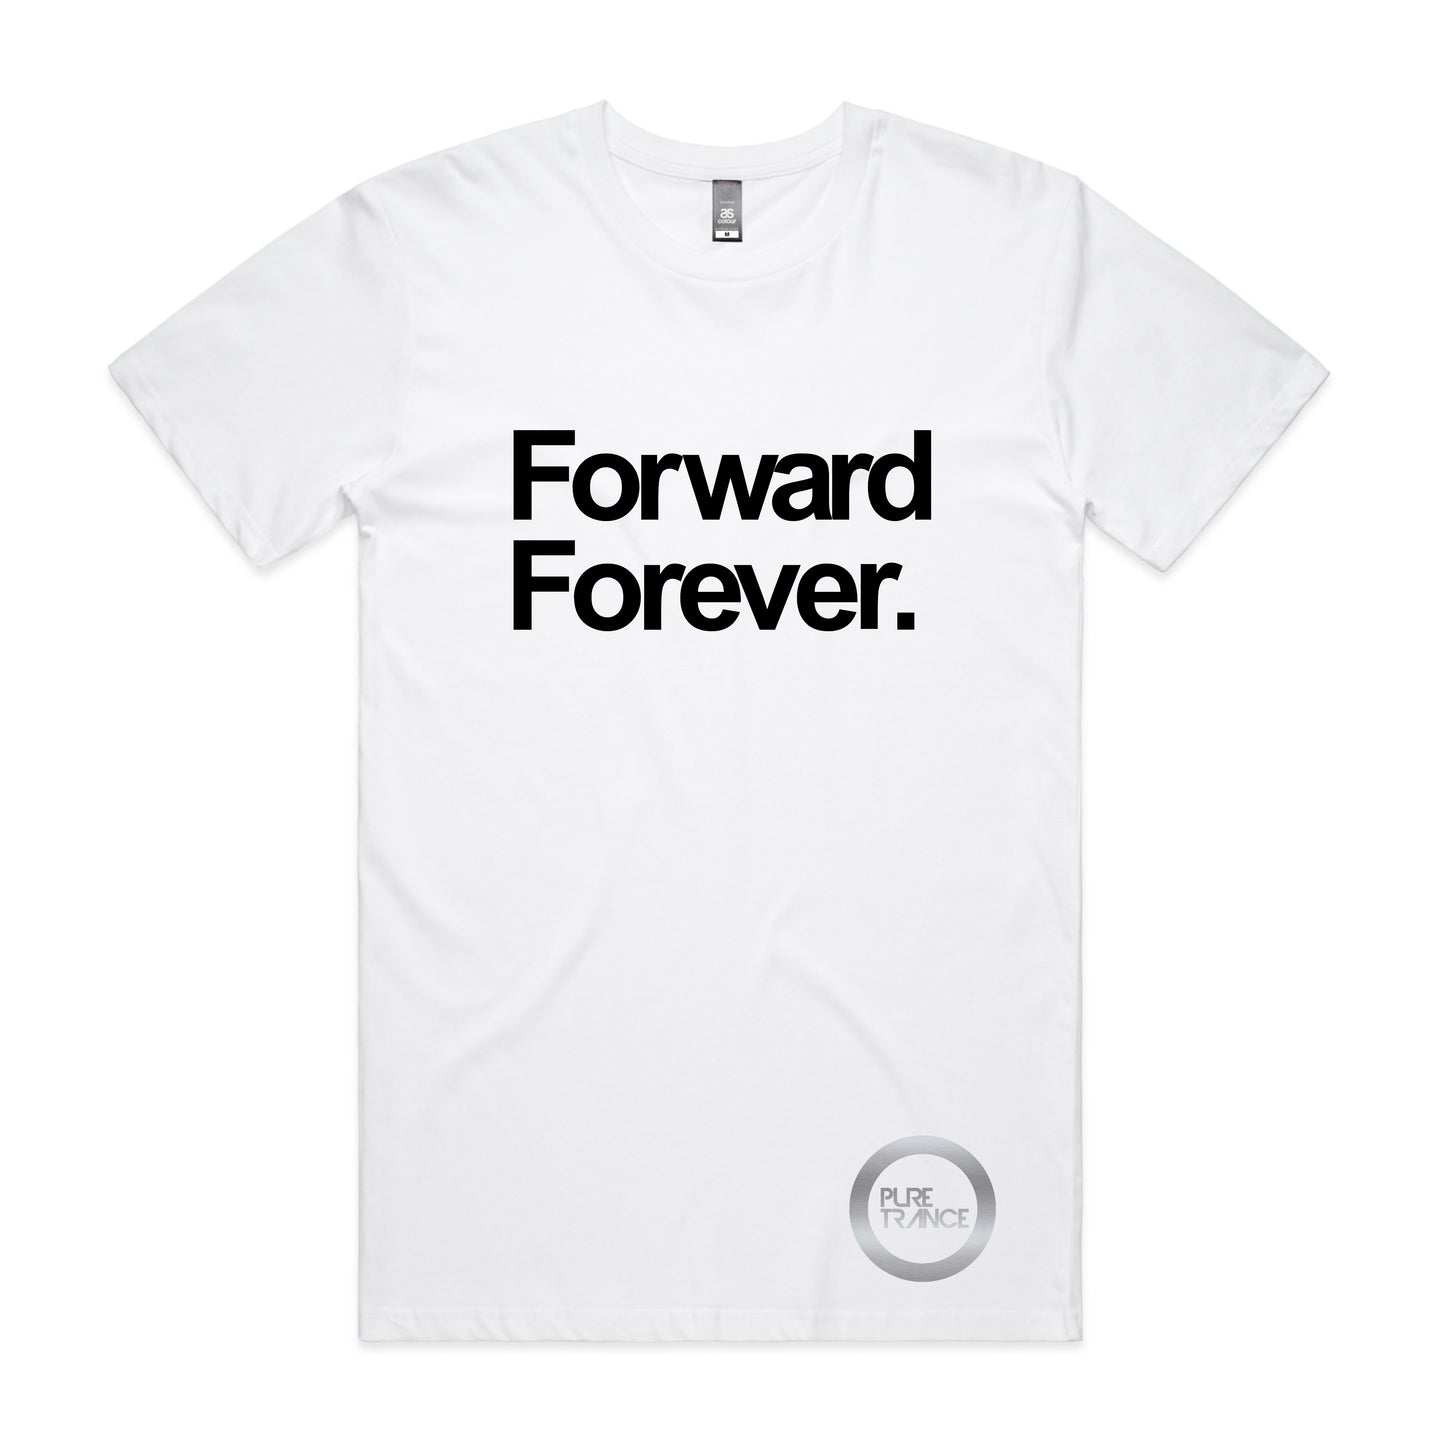 Forward Forever. Unisex Tee